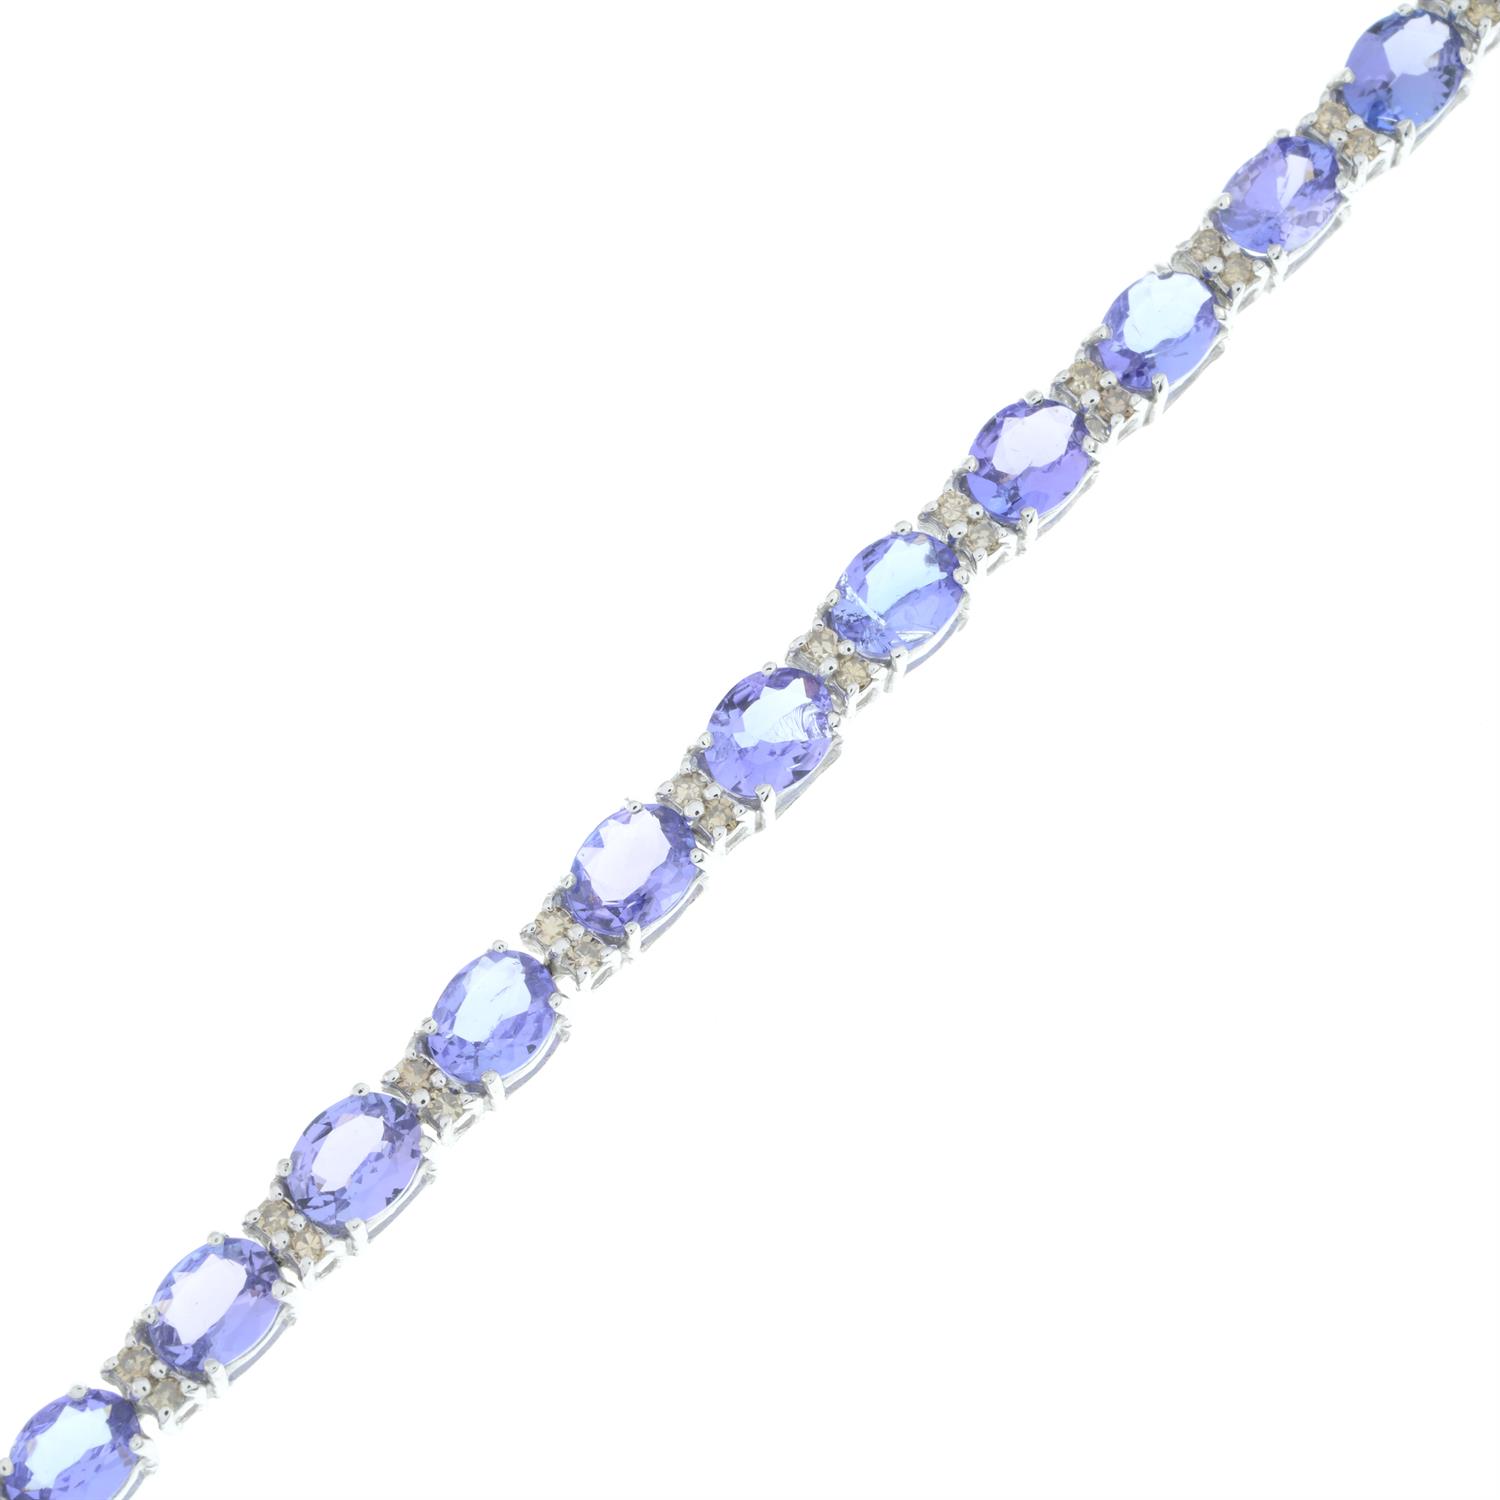 Tanzanite and diamond bracelet - Image 4 of 4